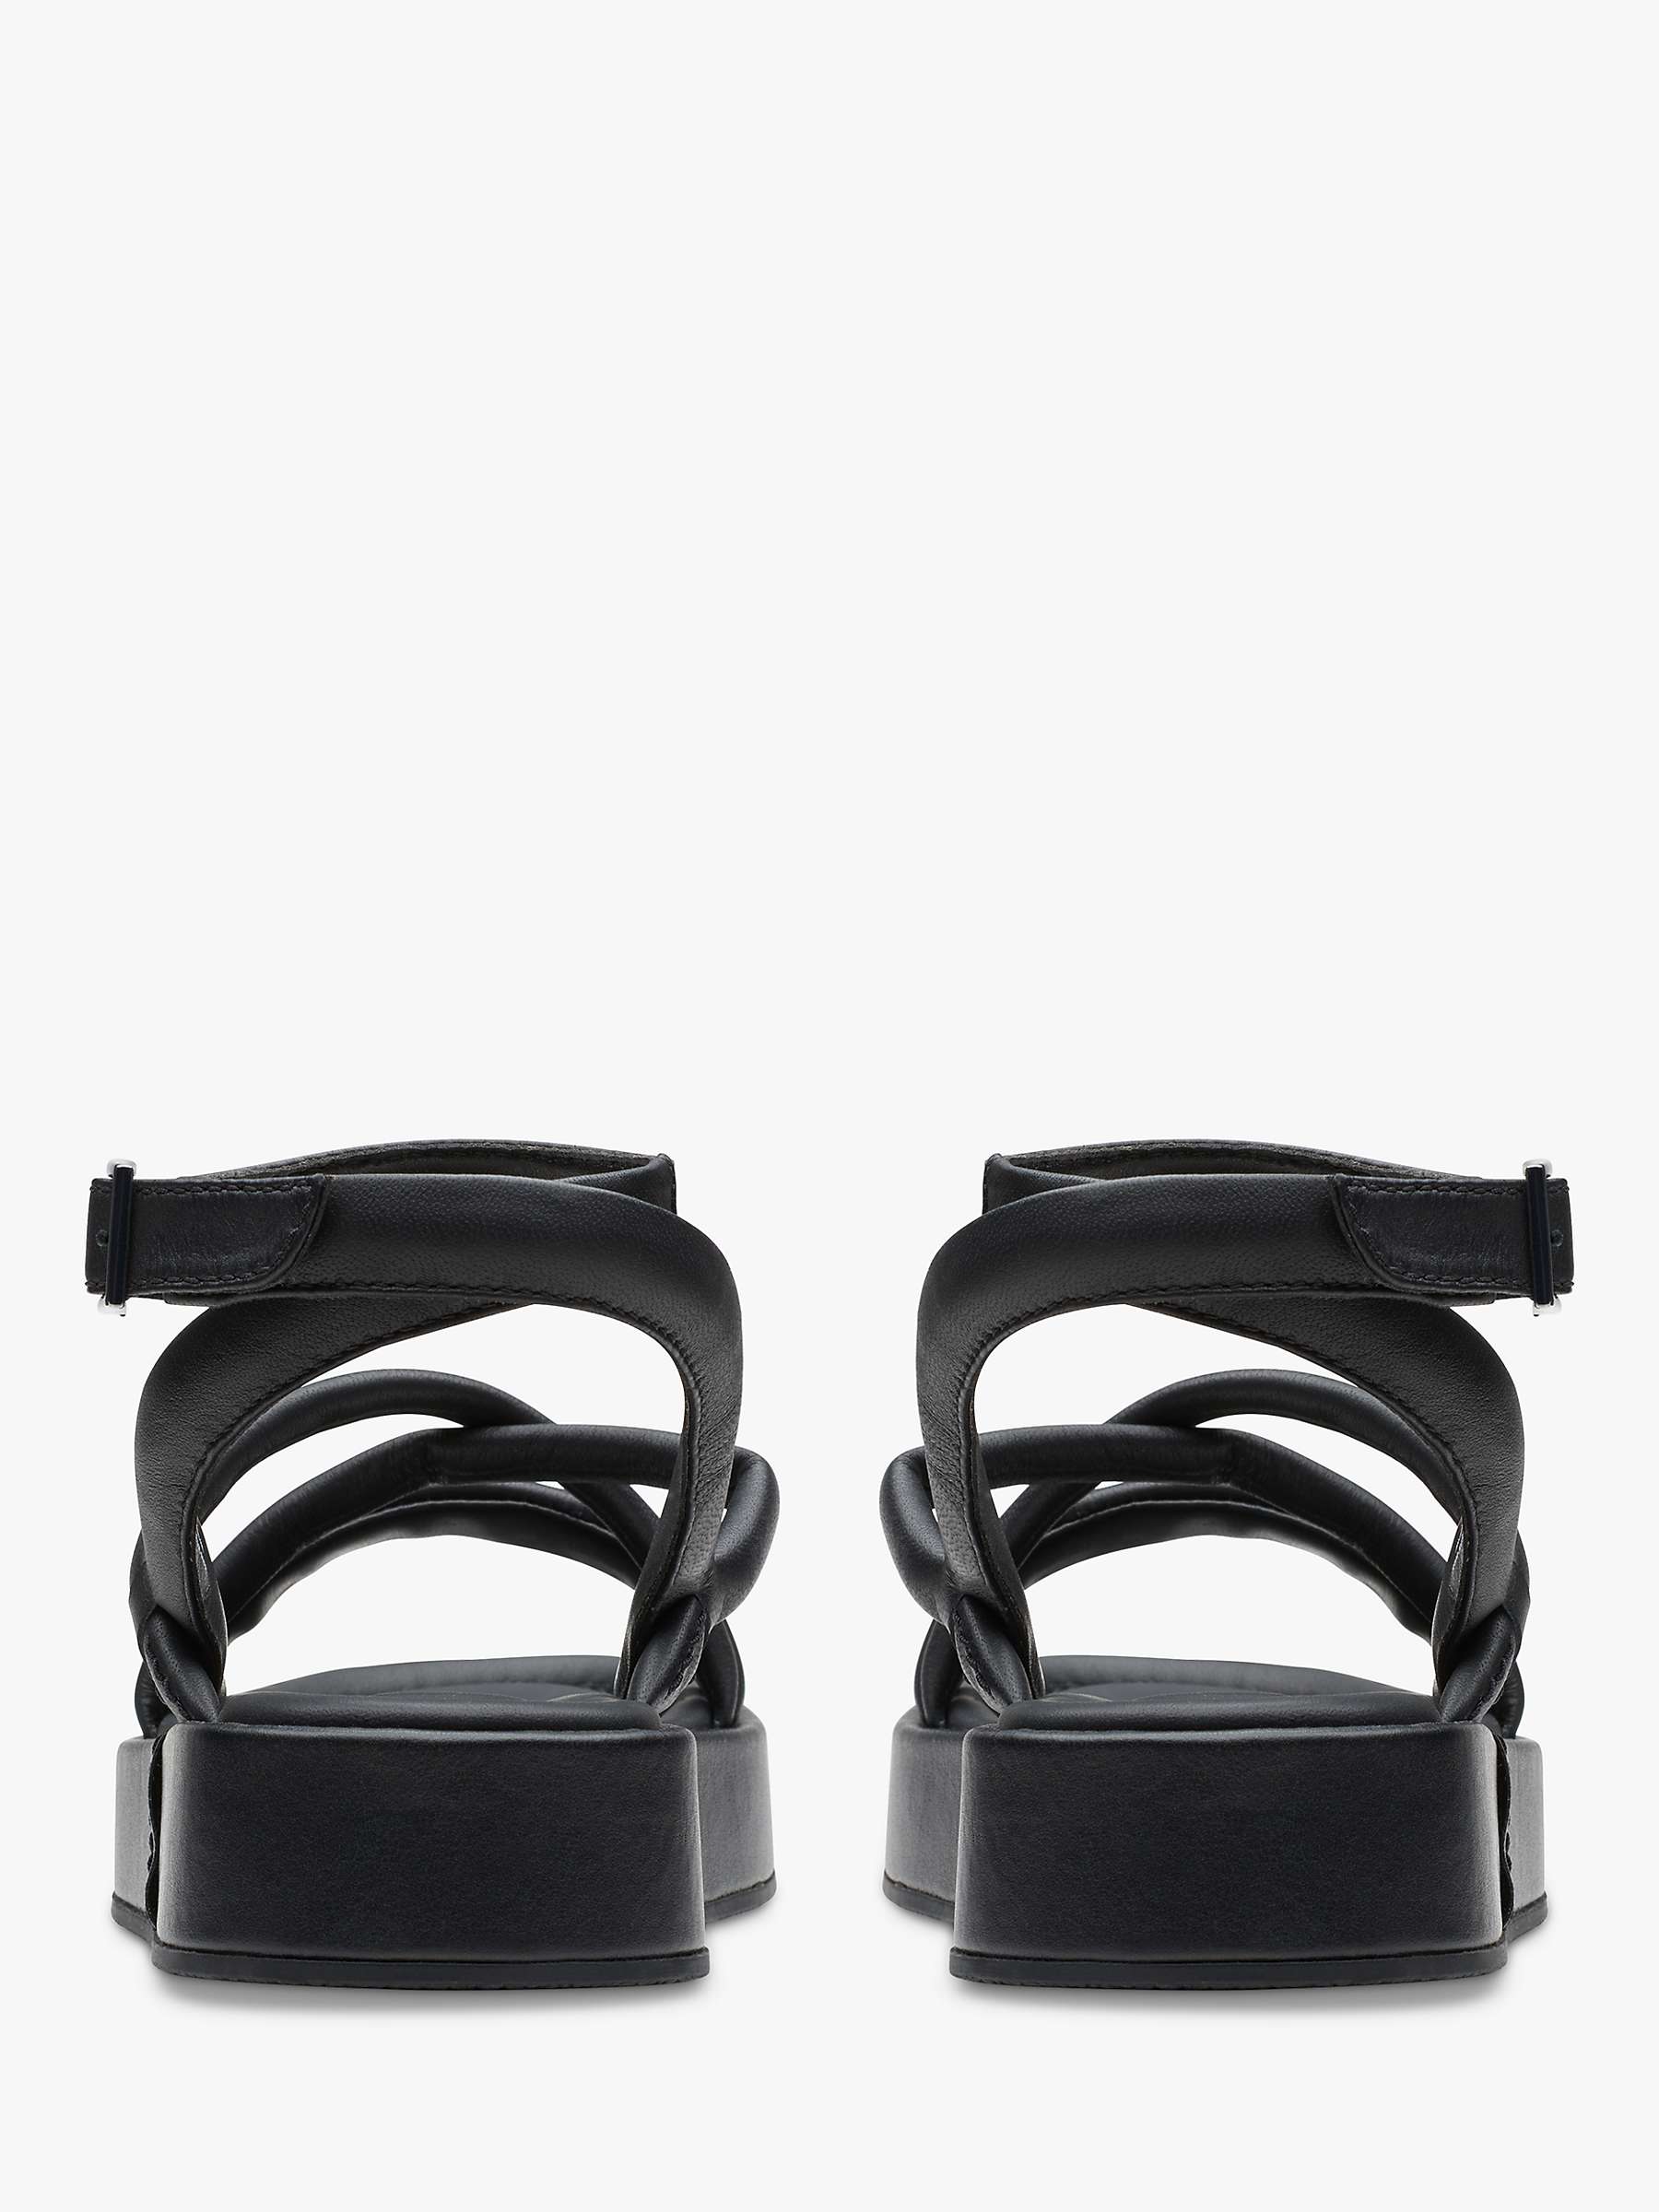 Buy Clarks Alda Cross Leather Flatform Sandals Online at johnlewis.com